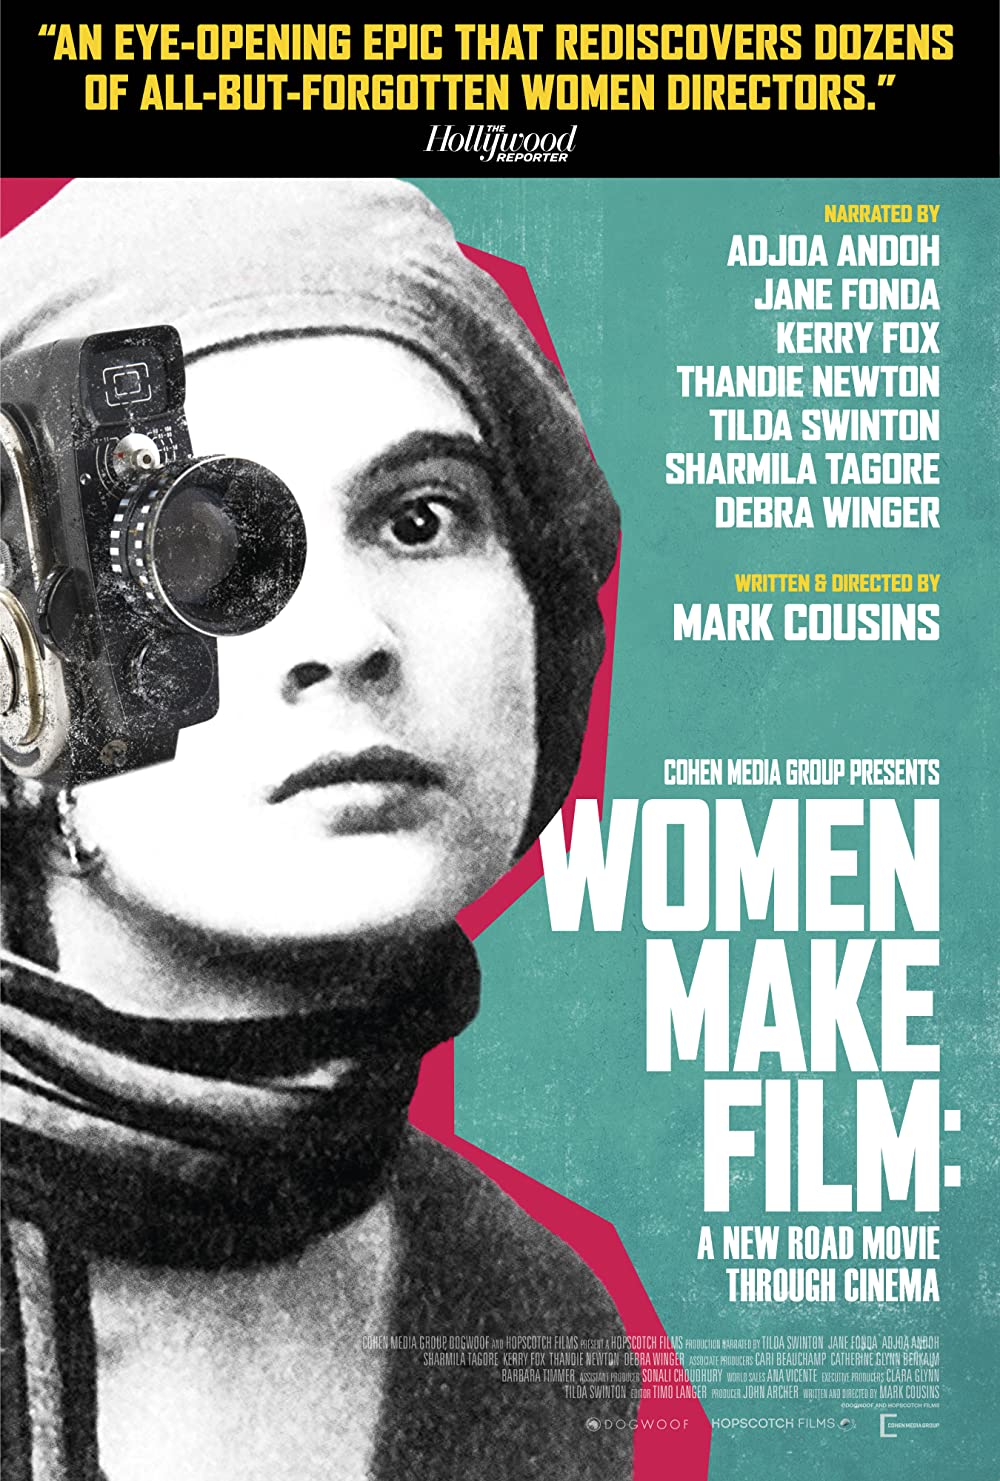 Filmbeschreibung zu Woman make Film: A New Road Movie Through Cinema. Part 1 (OV)